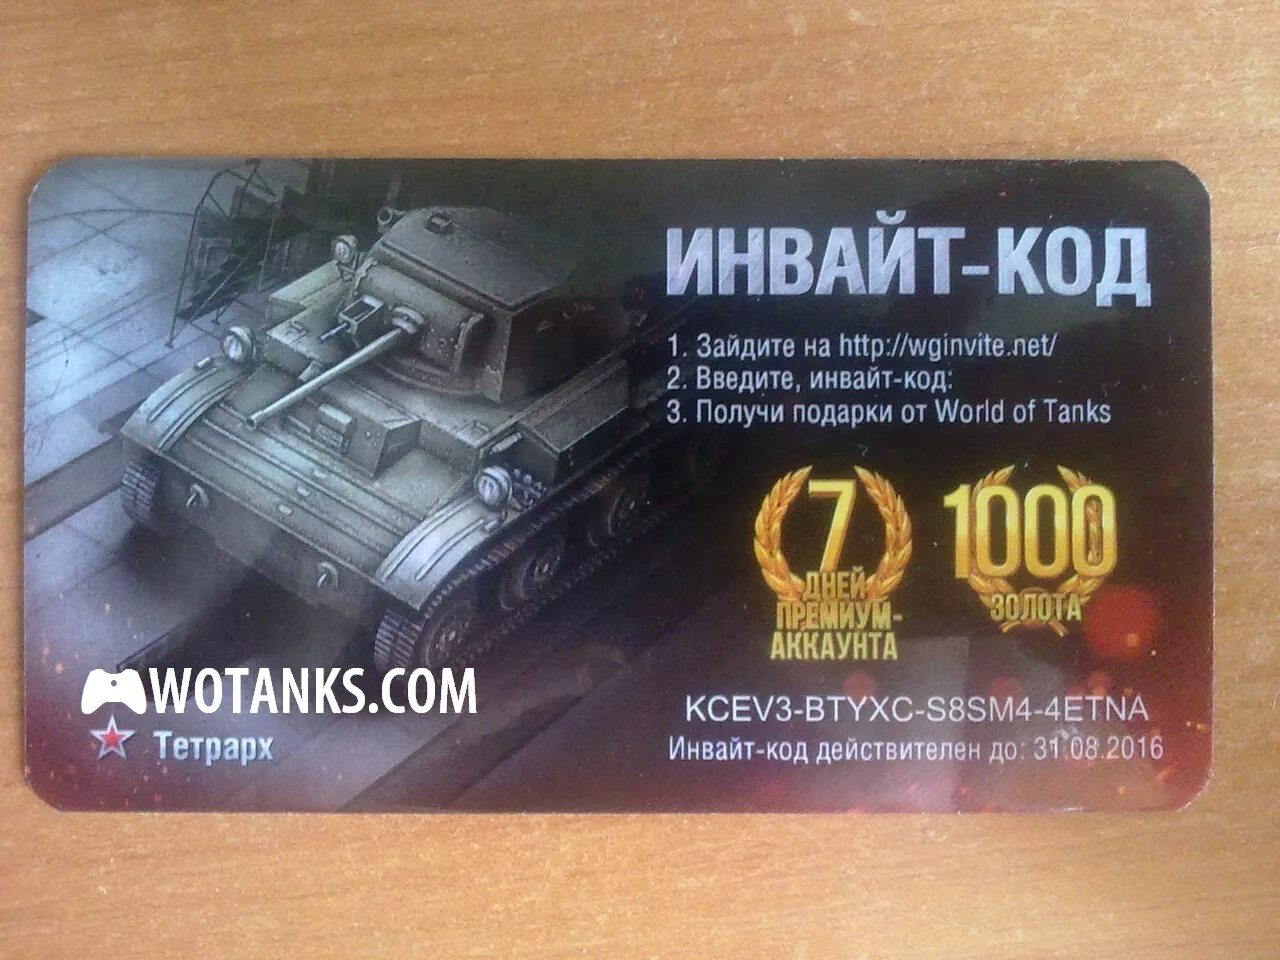 Инвайт коды wot. Инвайт коды вот. WOT бонус код. Бонус коды для World of Tanks. Инвайт код для World of Tanks.